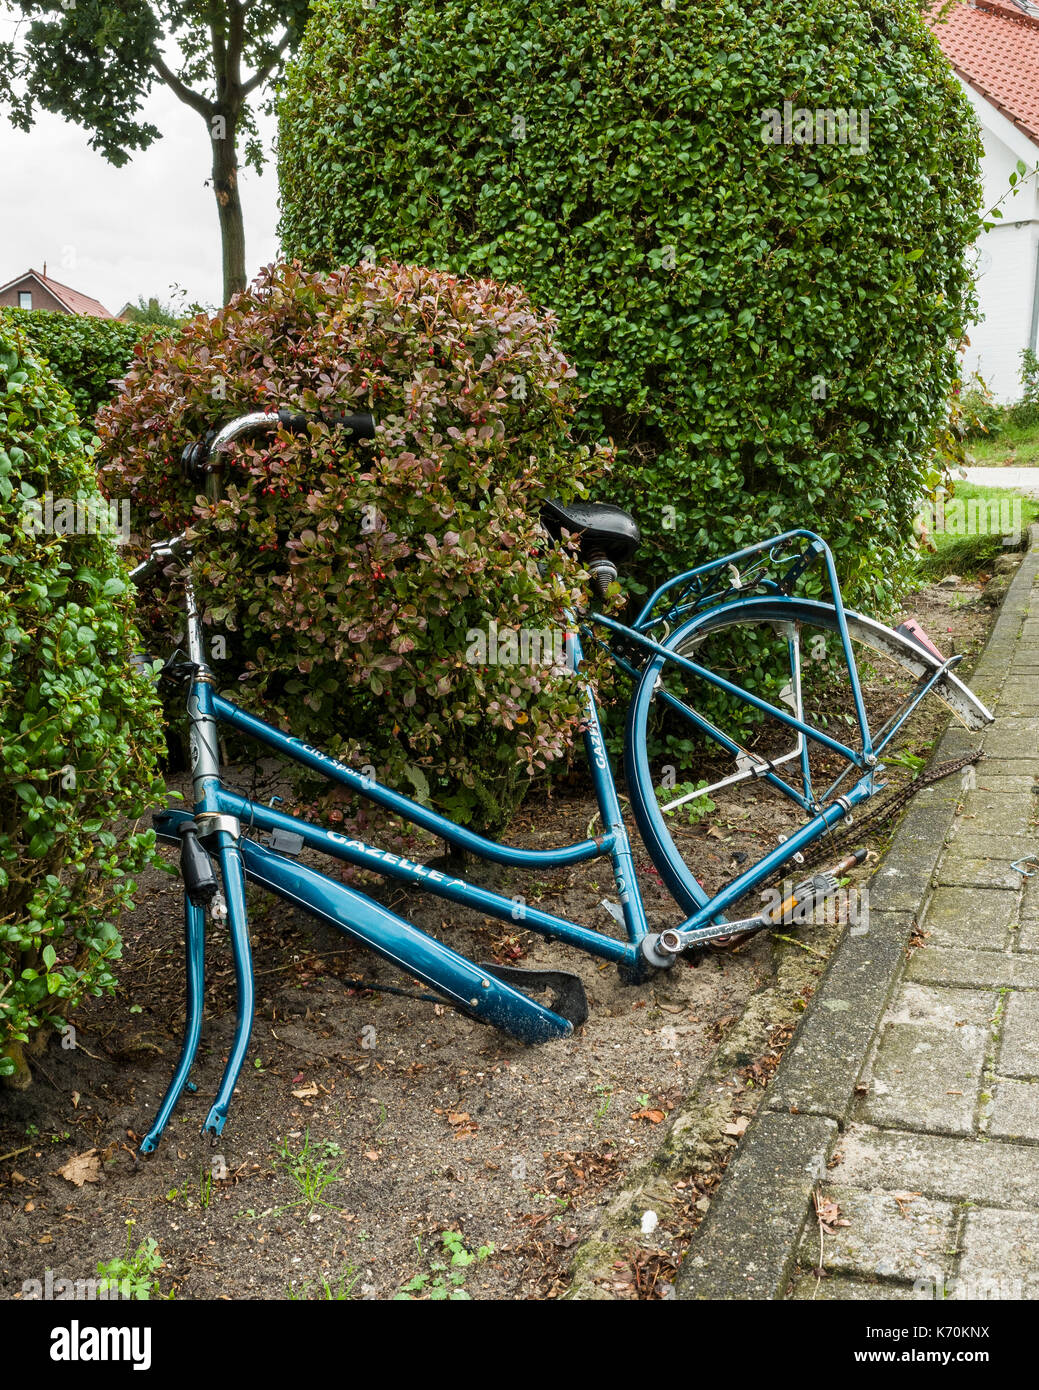 Langeoog. Deutschland. Deutschland. Ein verlassenes Fahrrad ohne Räder ist Linke lehnte sich gegen die Büsche auf dem Weg zum Parkplatz außerhalb der Langeoog Bahnhof - Inselbahnhof. Mit einer Ricoh GRII Kamera fotografiert. Stockfoto